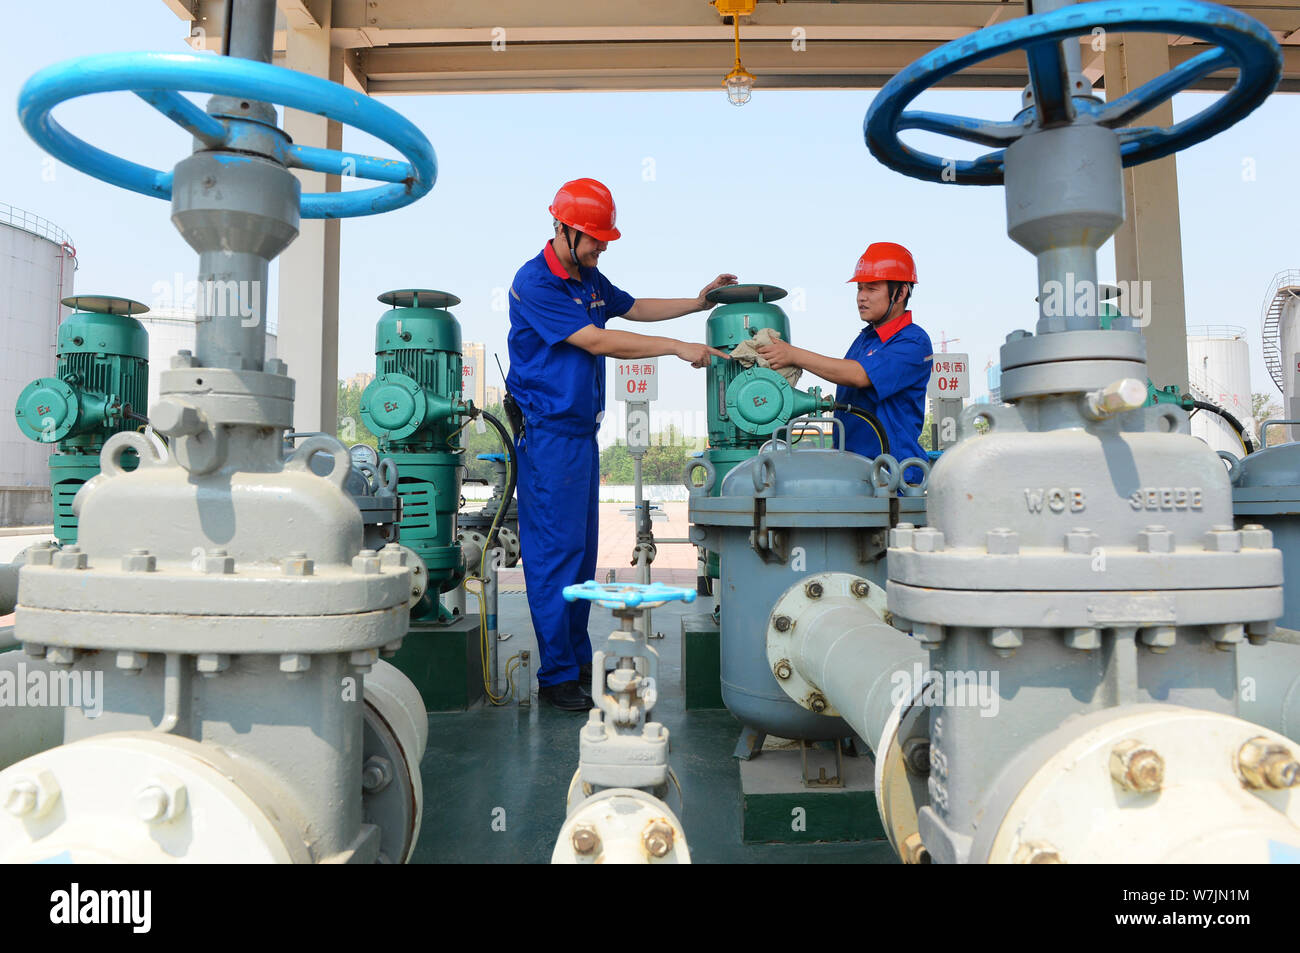 Die chinesischen Arbeiter Kraftstoffleitungen prüfen von ethanol Benzin und anderen Arten von Benzin an einer Tankstelle von Sinopec (China Petroleum & Chemical Corporation) in Stockfoto